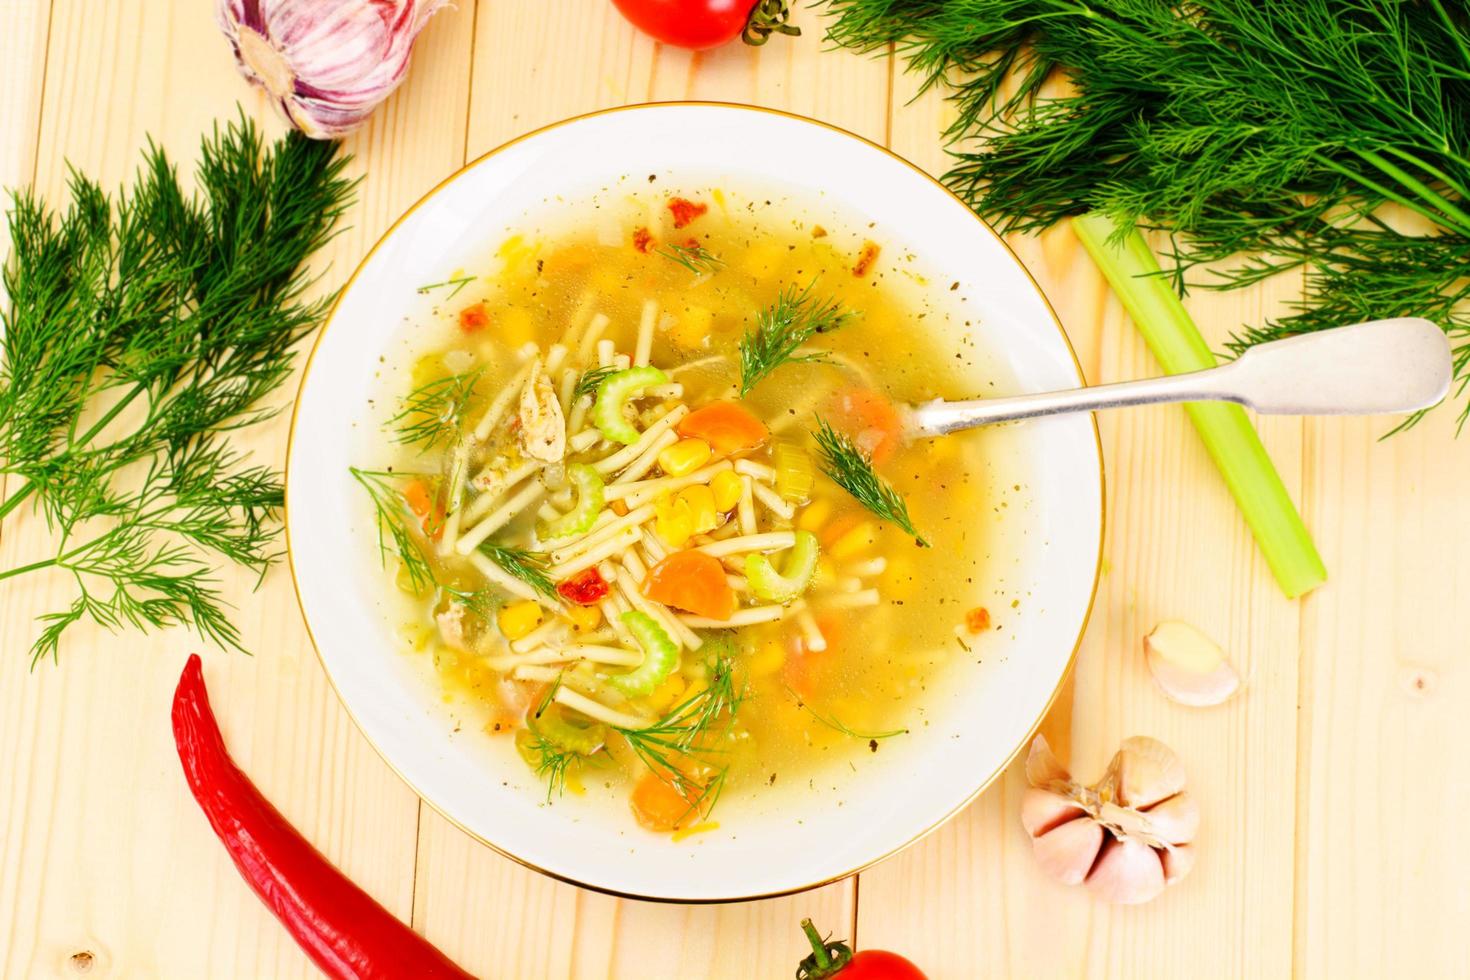 soupe au bouillon de poulet. nouilles et légumes photo